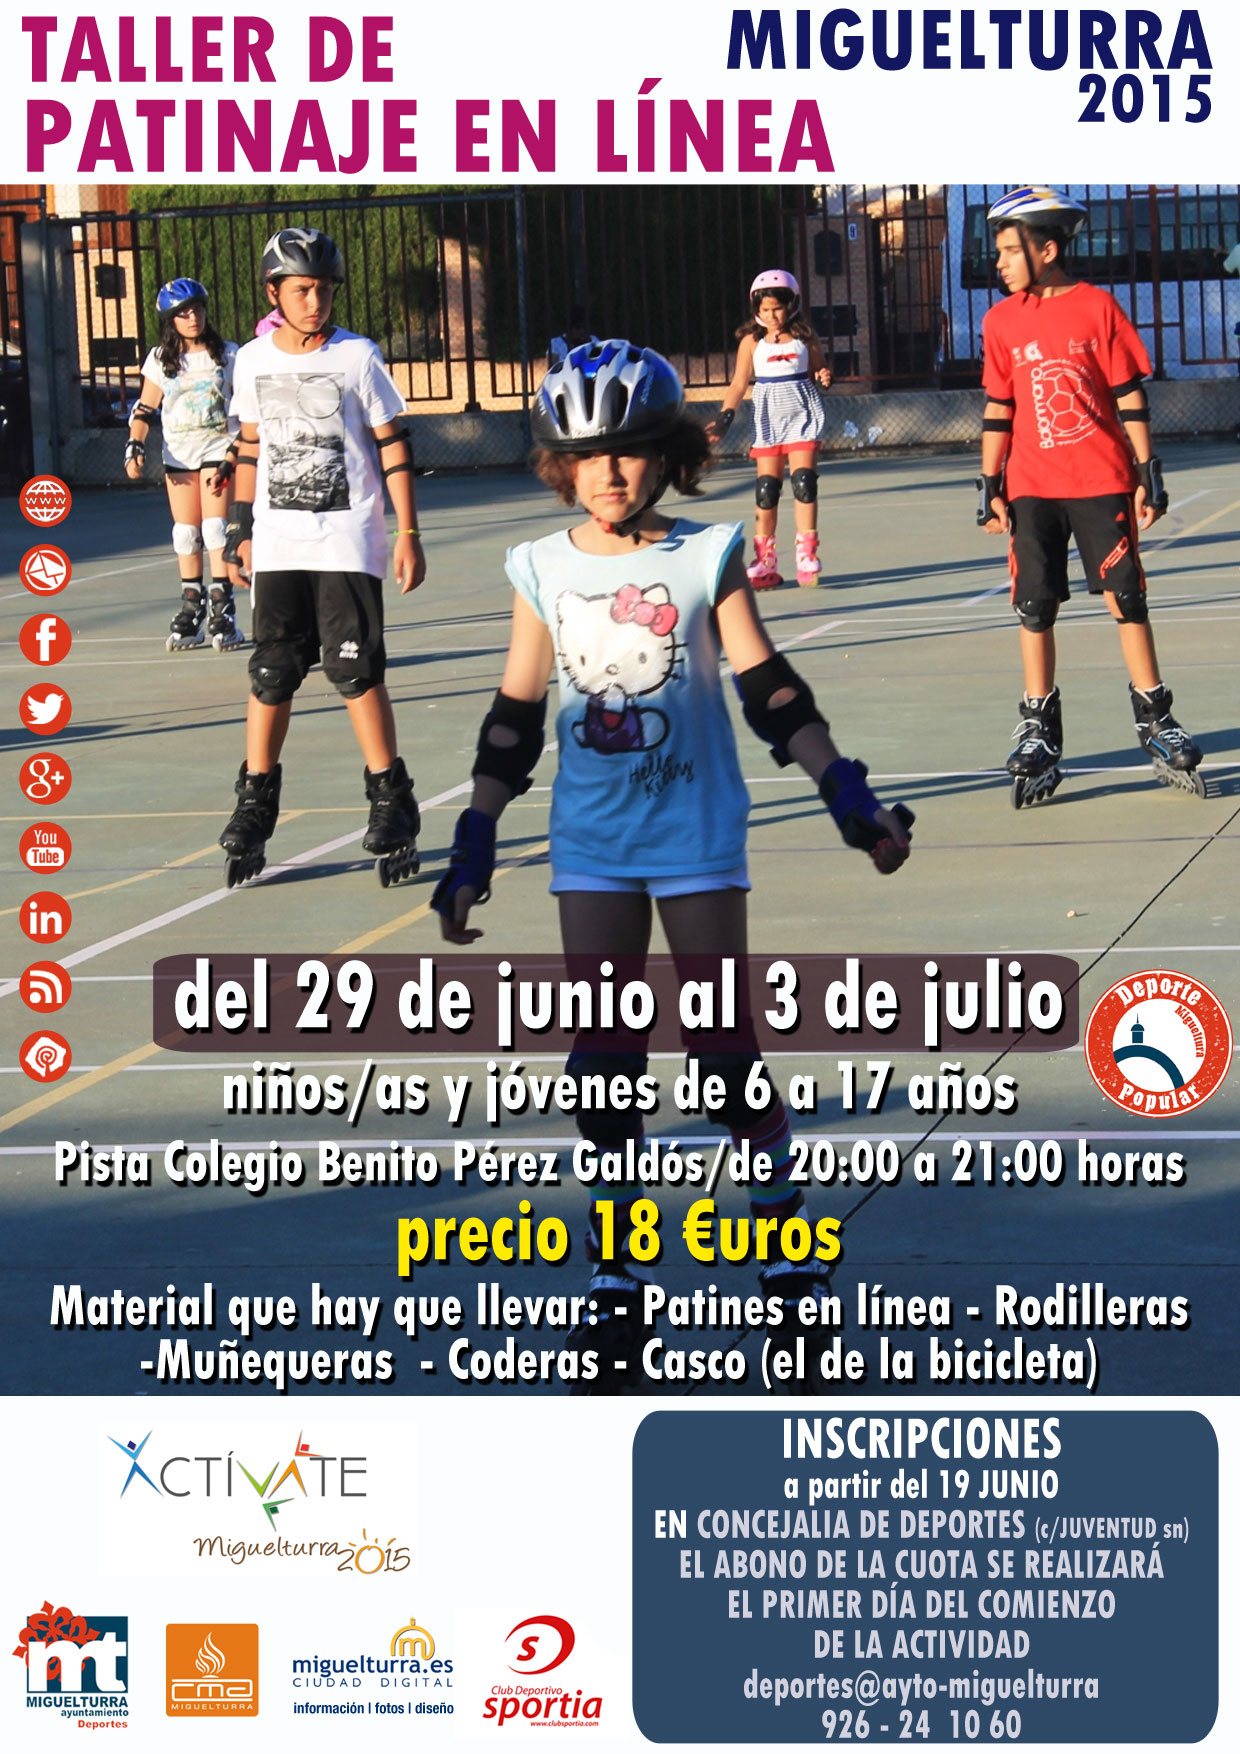 Abierto el plazo para el taller de patinaje en línea del 29 al 3 de julio en Miguelturra